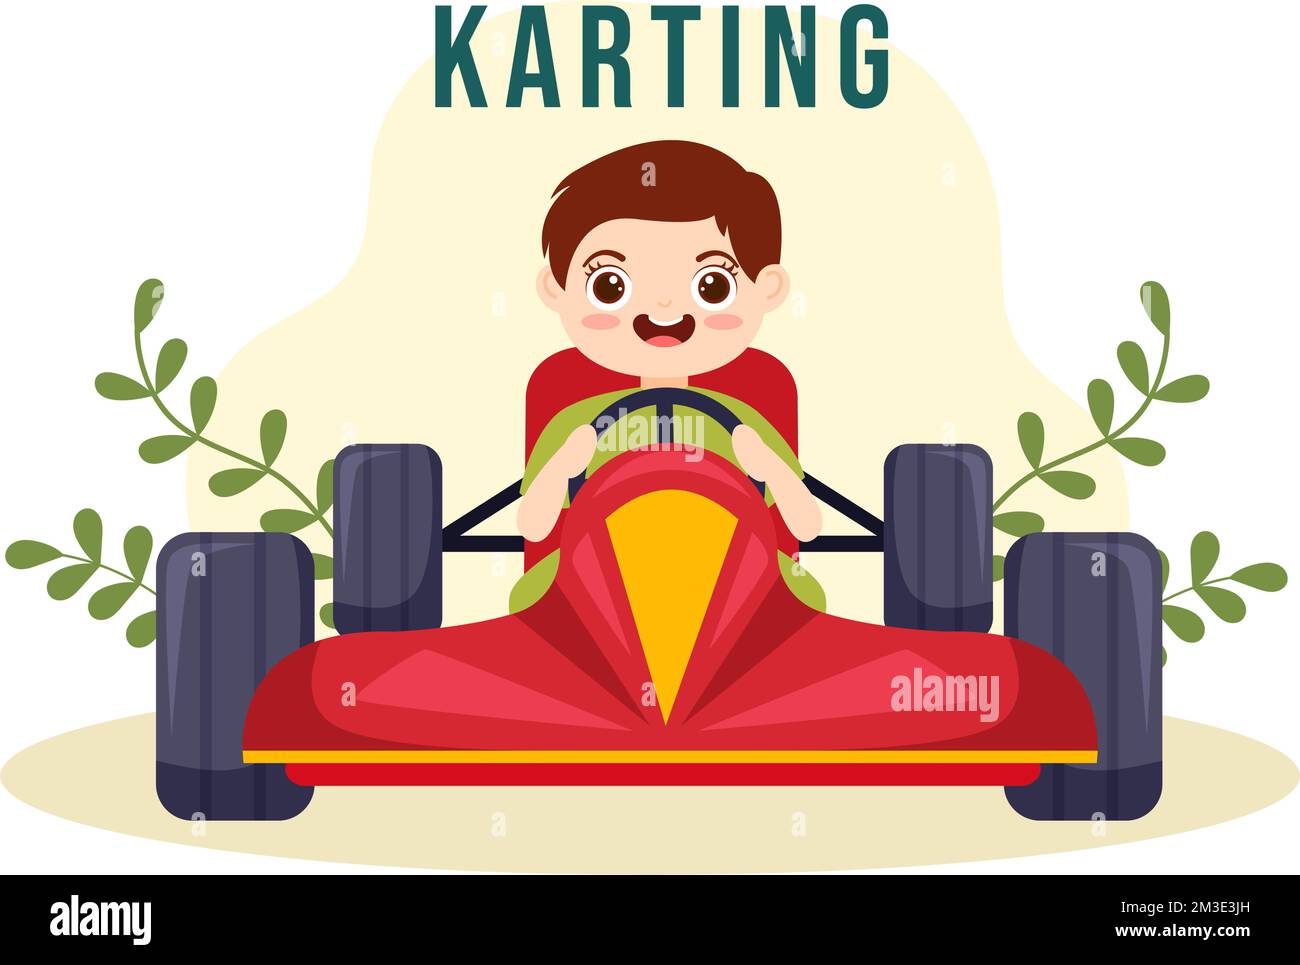 Kart-Sport mit kleinen Kindern Rennspiel Go Kart oder Mini-Auto auf einer kleinen Rennstrecke in einer flachen, handgezeichneten Schablone Stock Vektor